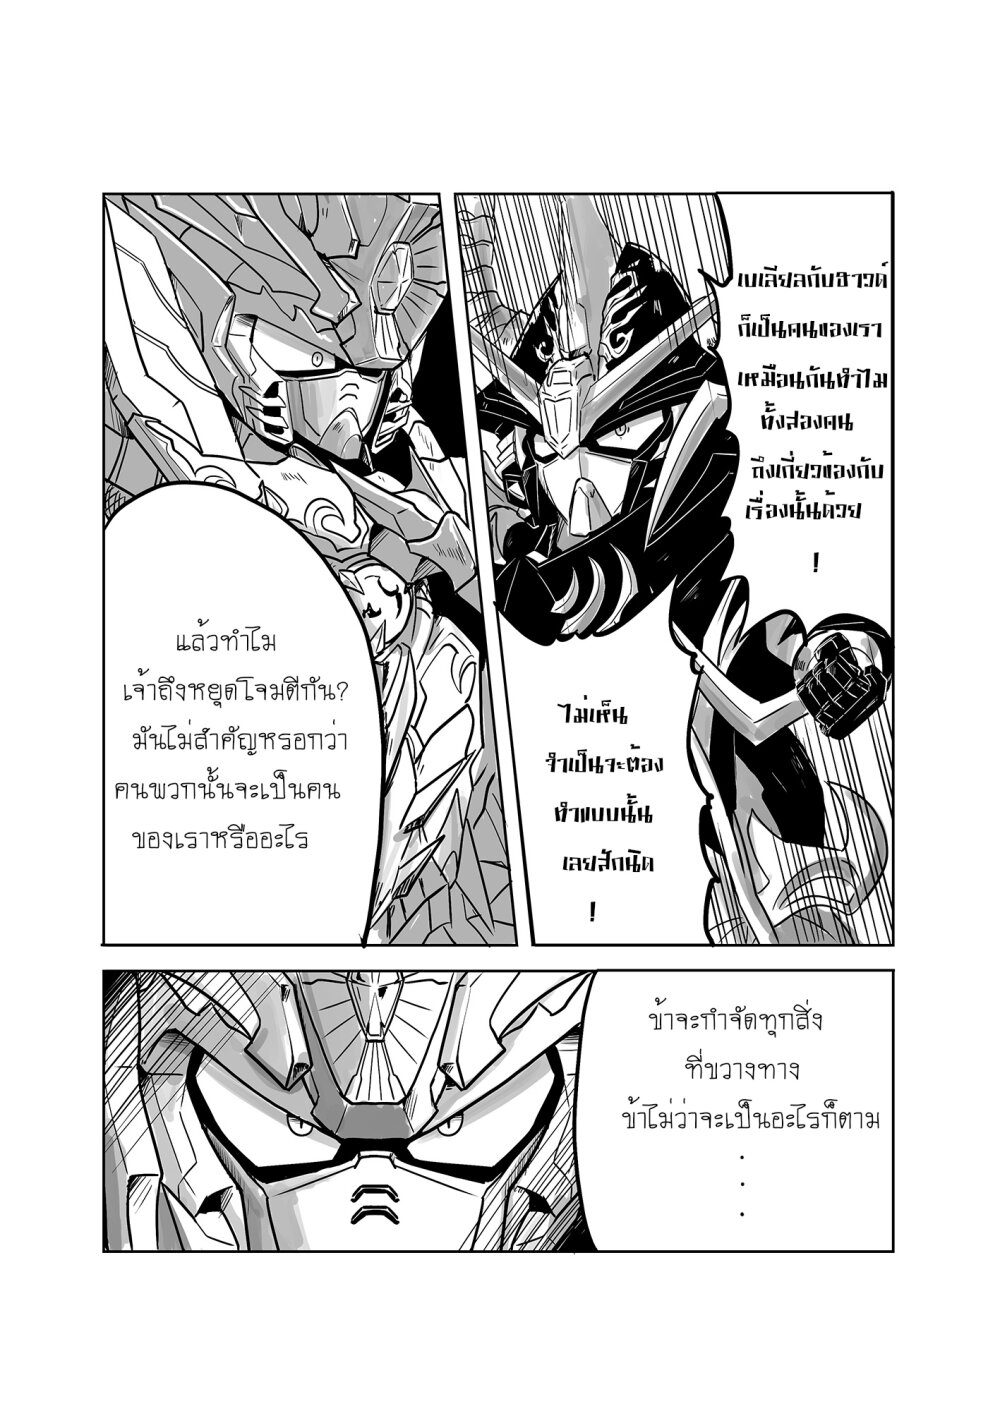 SD Gundam World​ Heroes 11 (4)